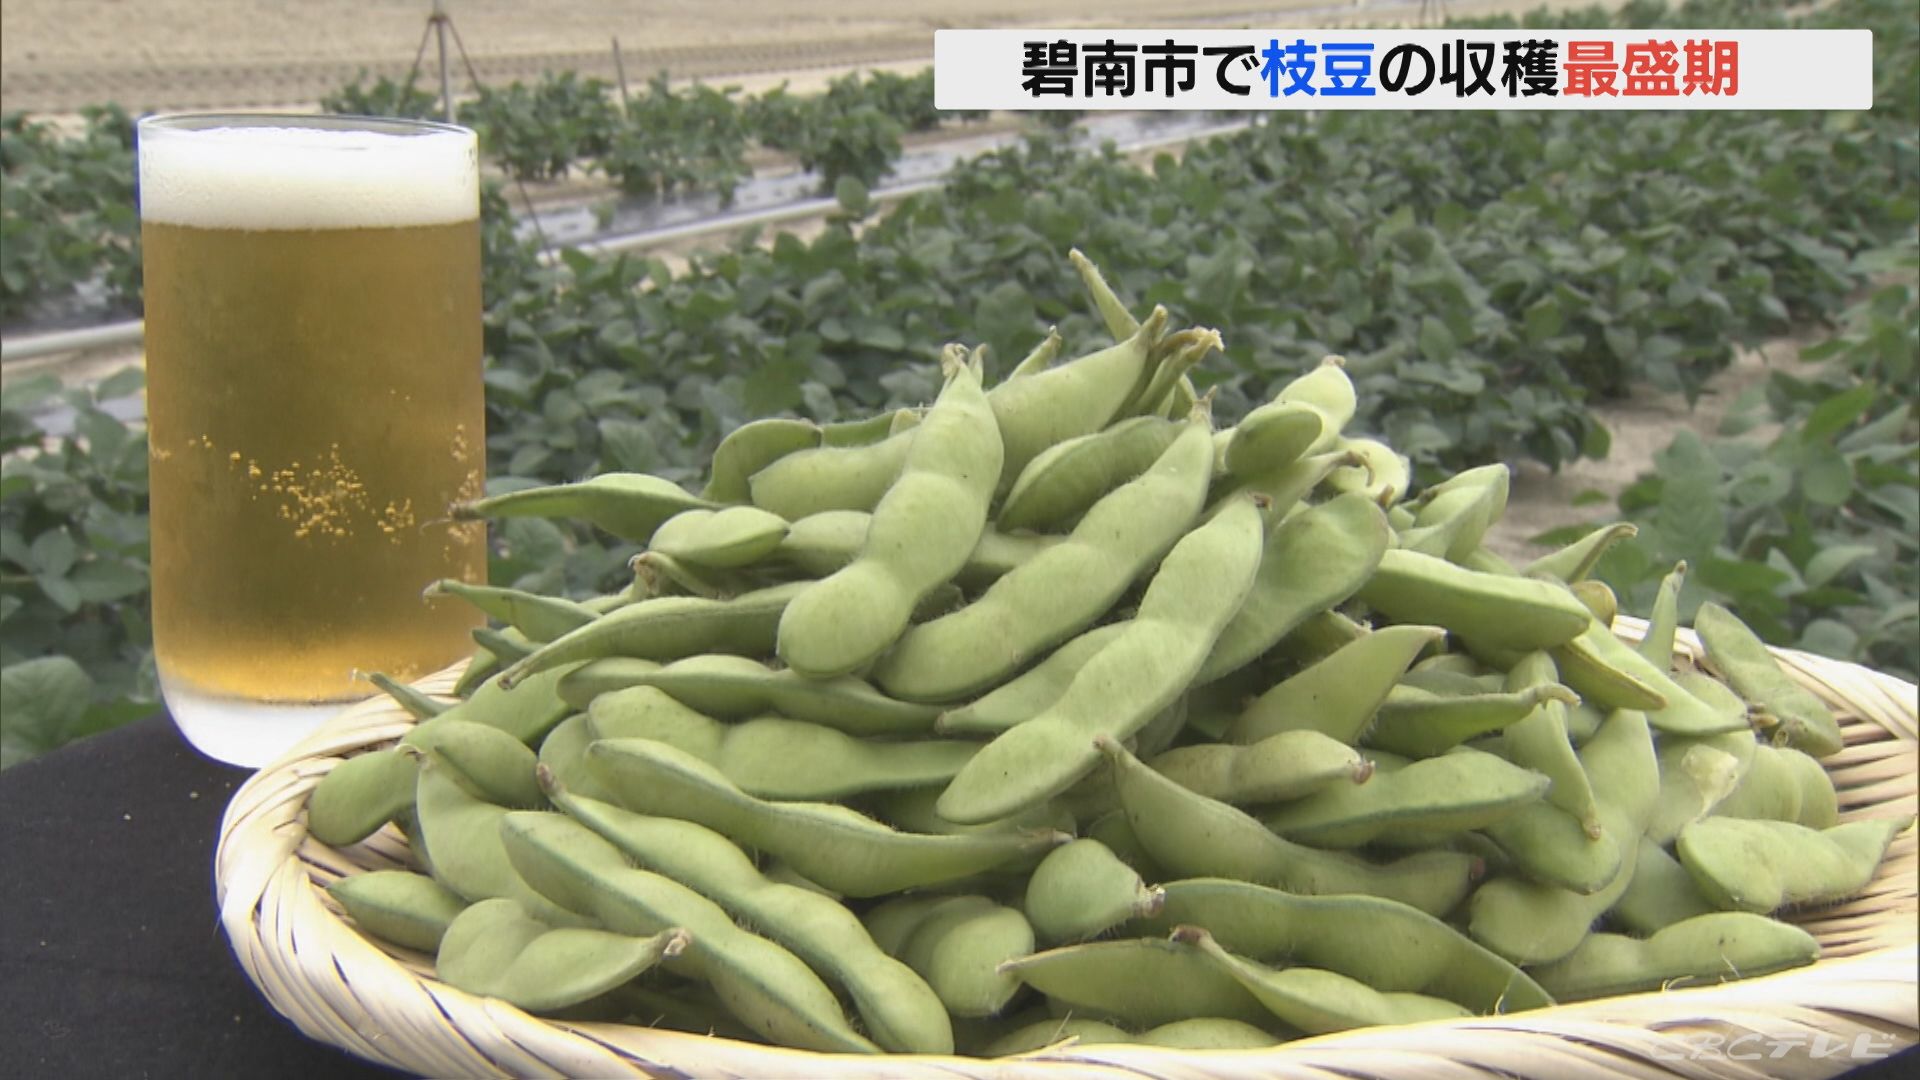 「量は少ないが味は最高」ビールのおつまみ 枝豆の収穫最盛期 愛知・碧南市